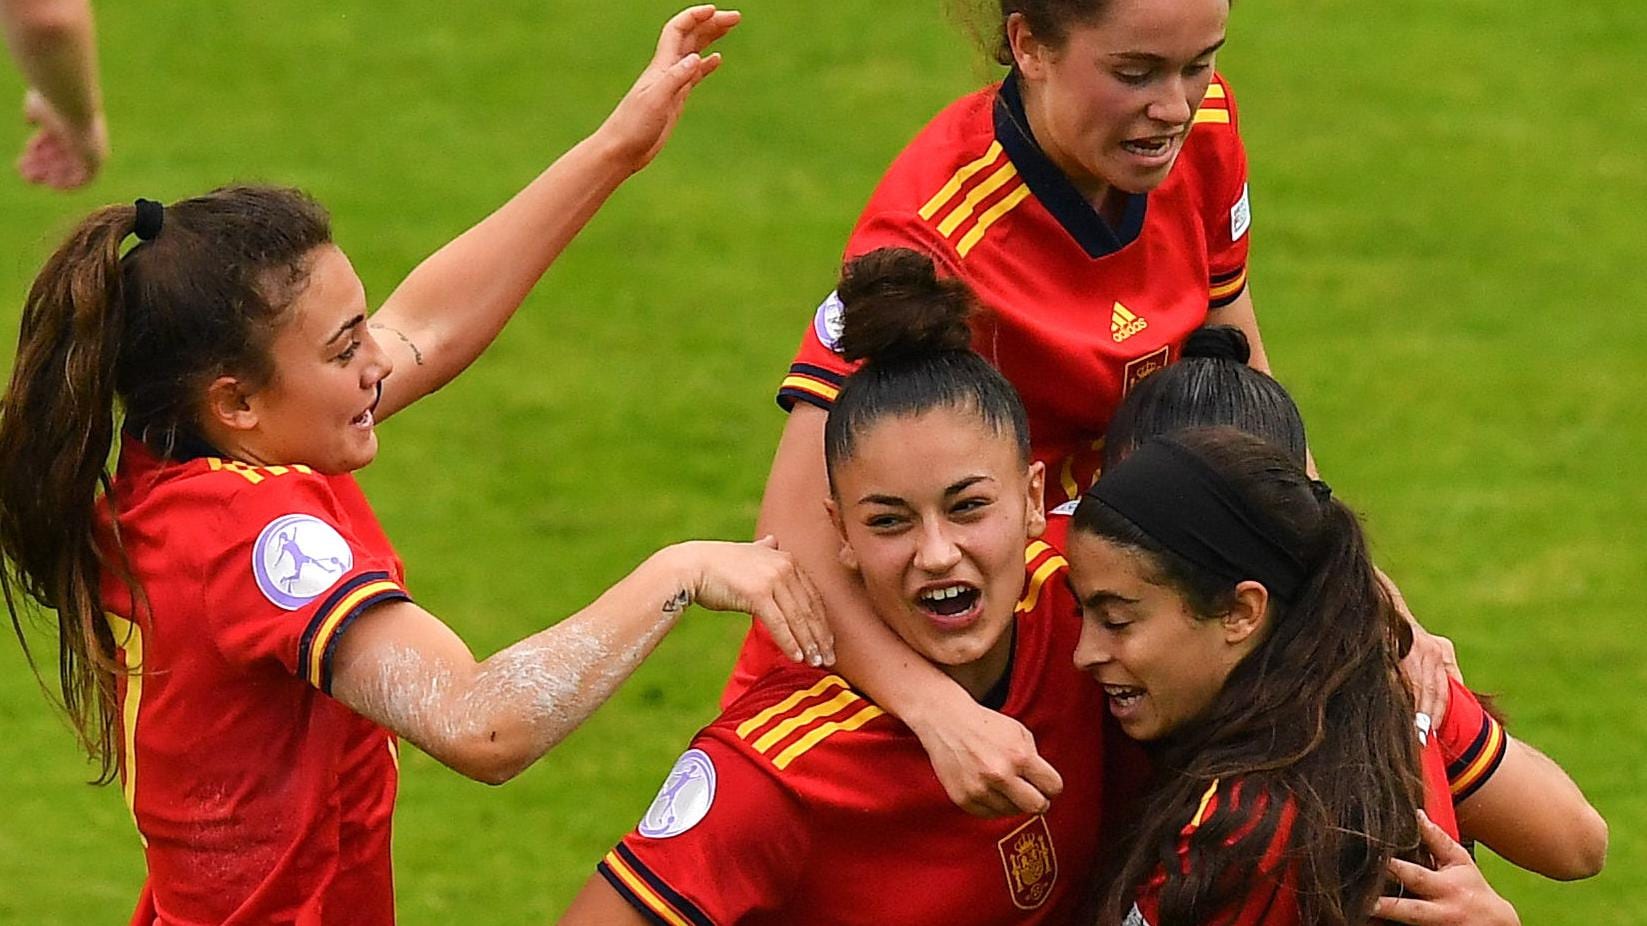 Finale der U17-EM der Frauen 2022 und Ergebnisse: Spanien, Frankreich und Deutschland im Halbfinale |  U17 Frauen Euro